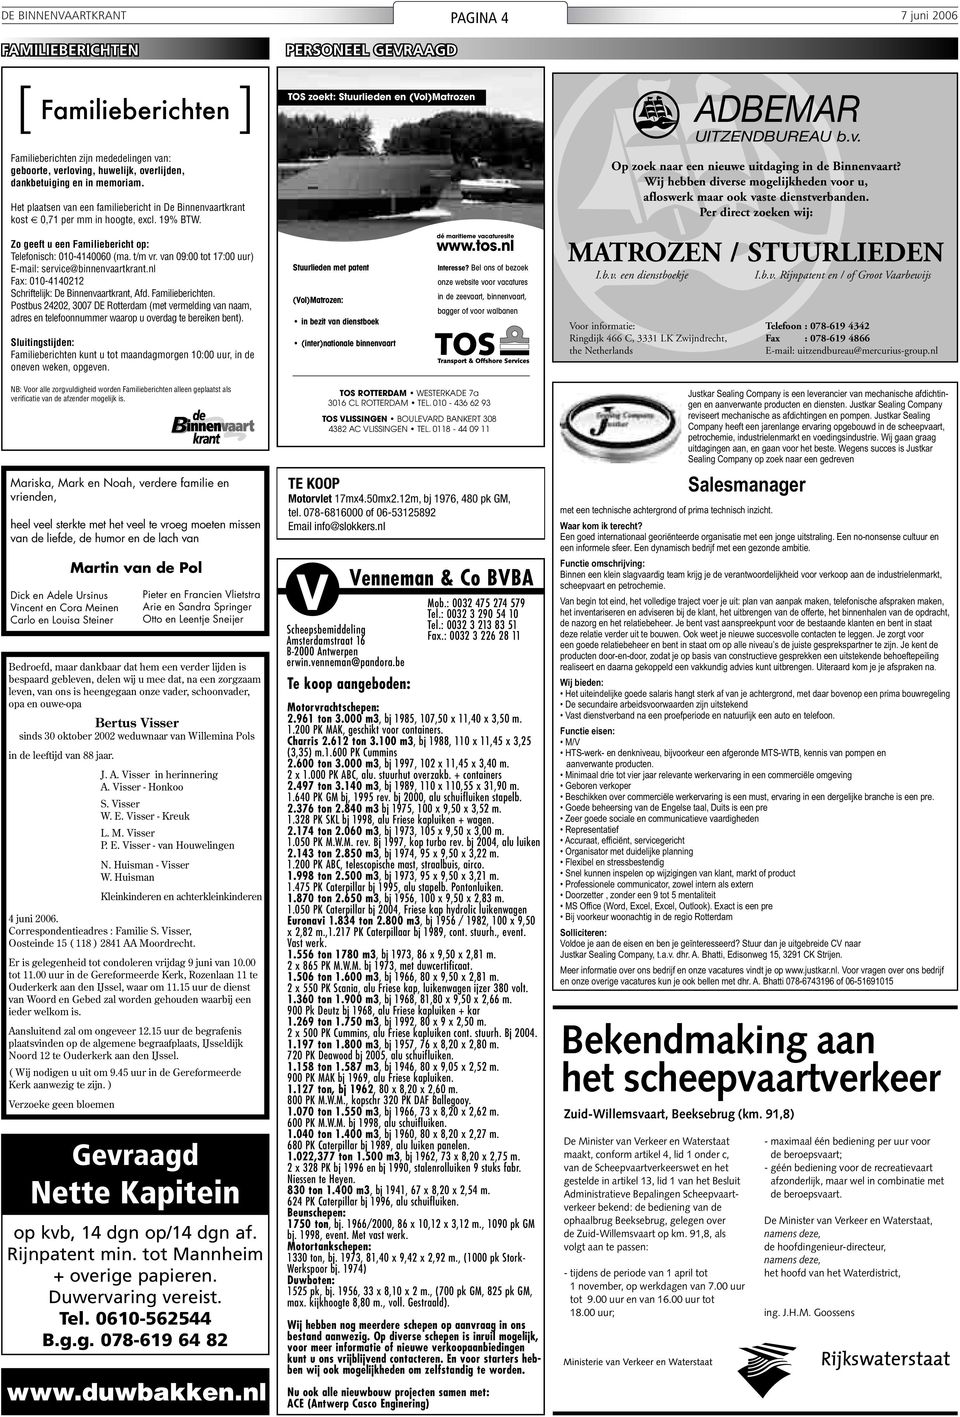 van 09:00 tot 17:00 uur) E-mail: service@binnenvaartkrant.nl Fax: 010-4140212 Schriftelijk: De Binnenvaartkrant, Afd. Familieberichten.